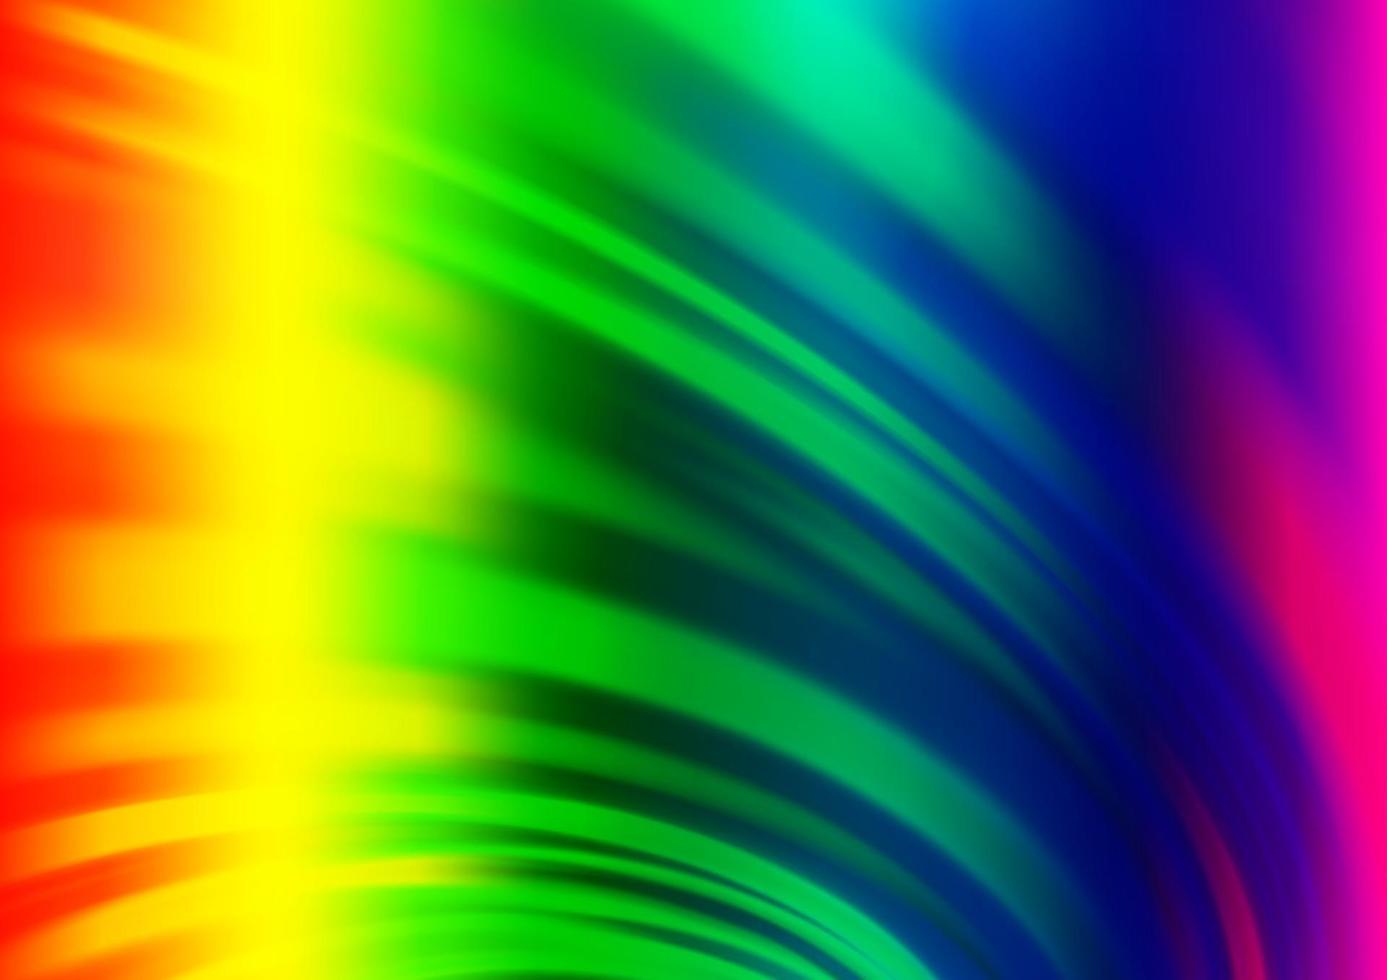 luz multicolor, modelo de vetor de arco-íris com linhas abstratas.